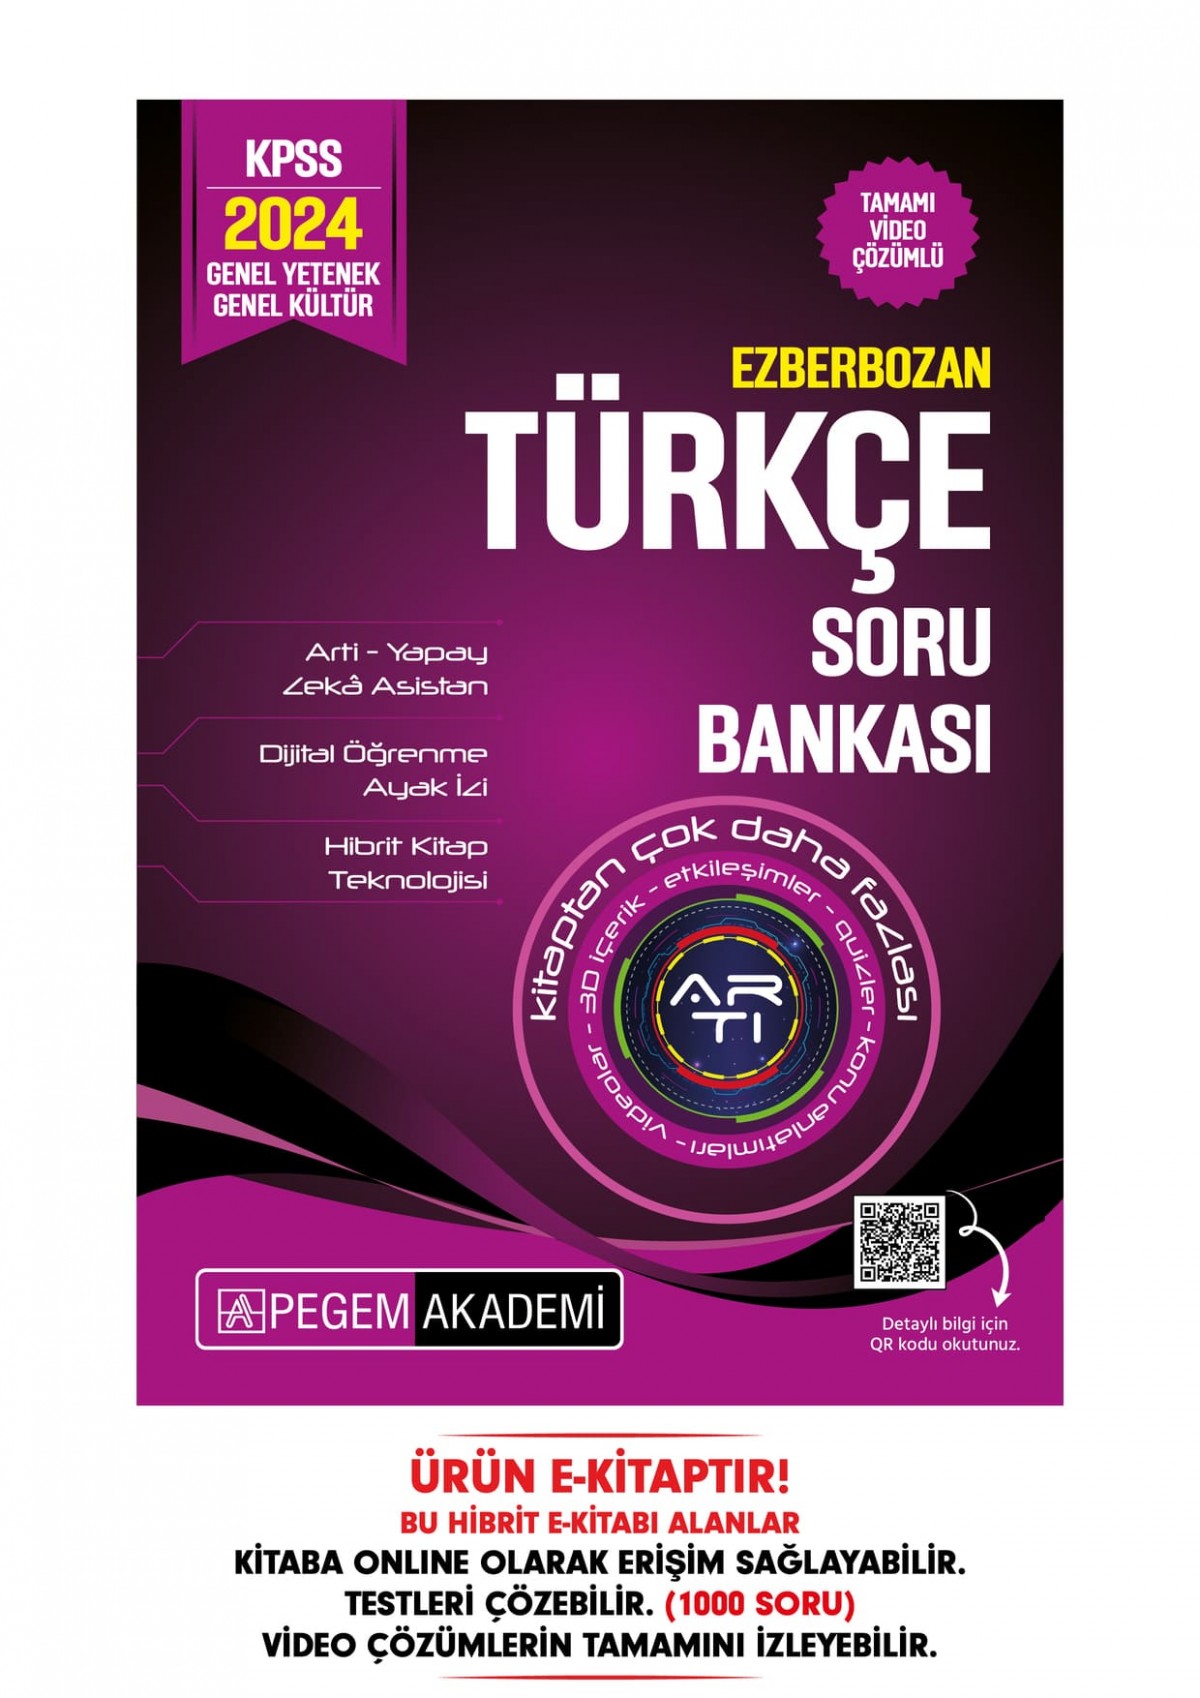 2024 Ezberbozan KPSS Genel Yetenek Genel Kültür Türkçe Soru Bankası Hibrit E-Kitap